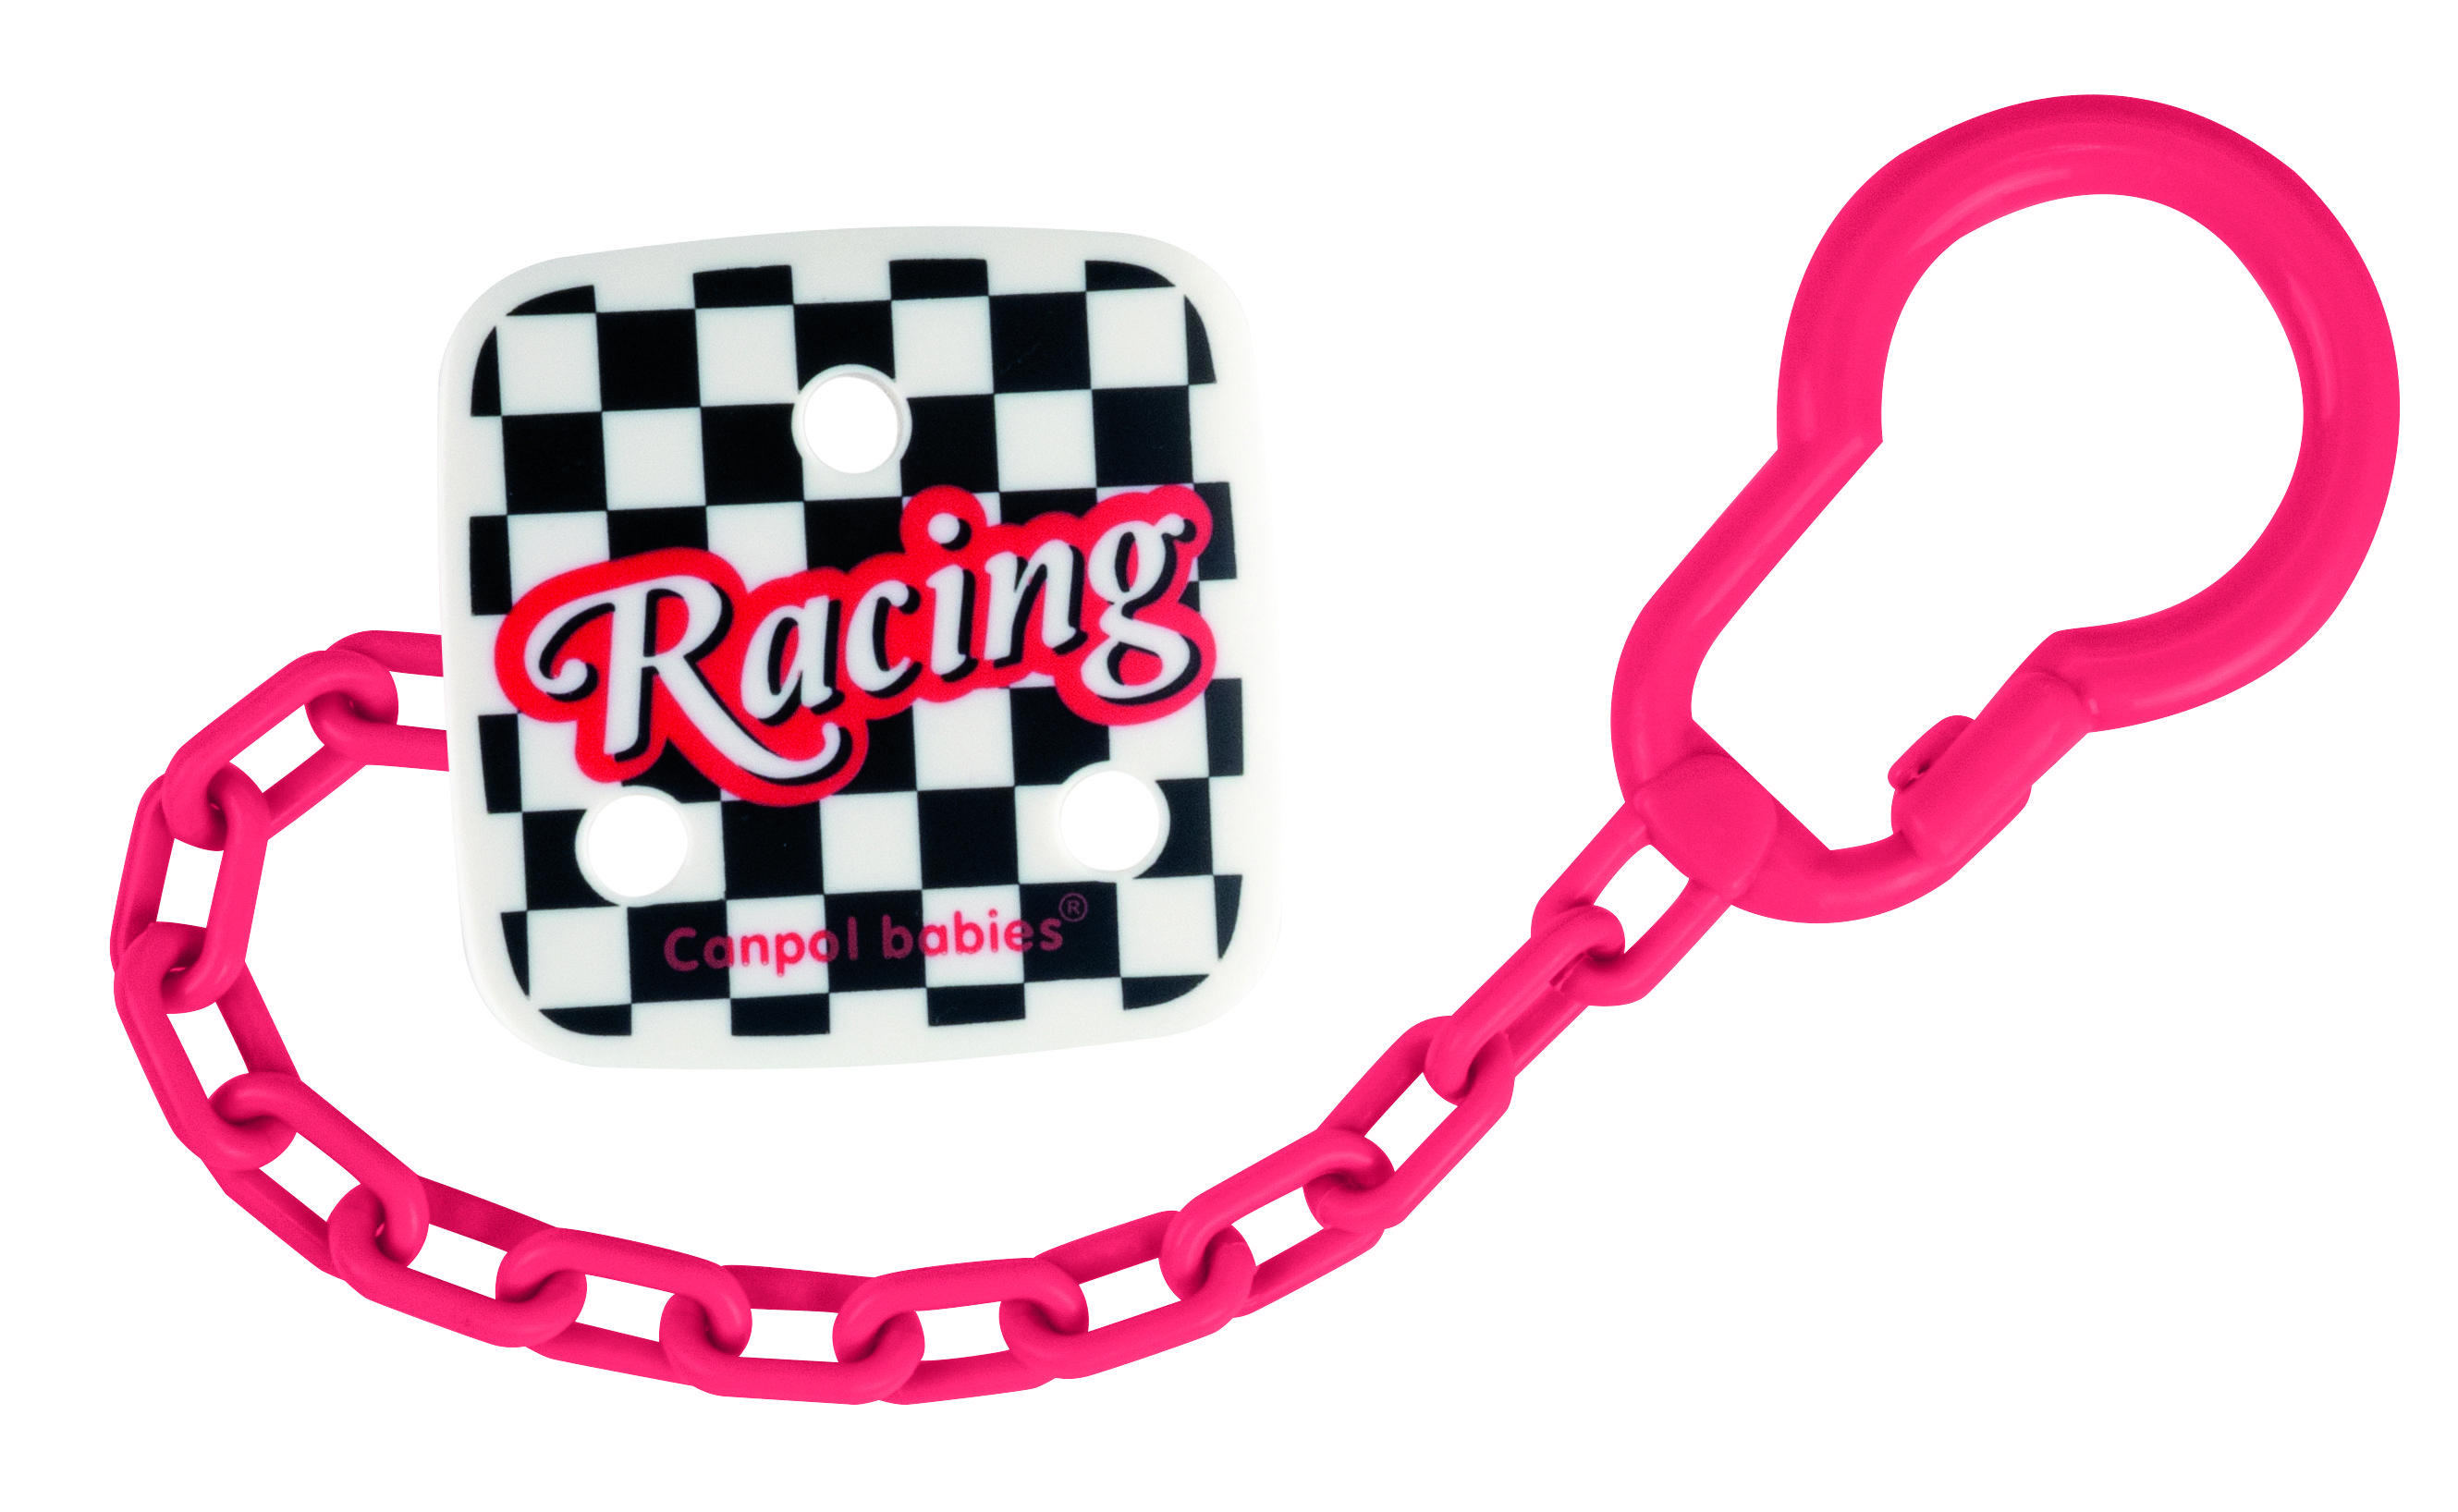 Цепочка для пустышки Canpol babies Racing, розовый (2/435) - фото 1